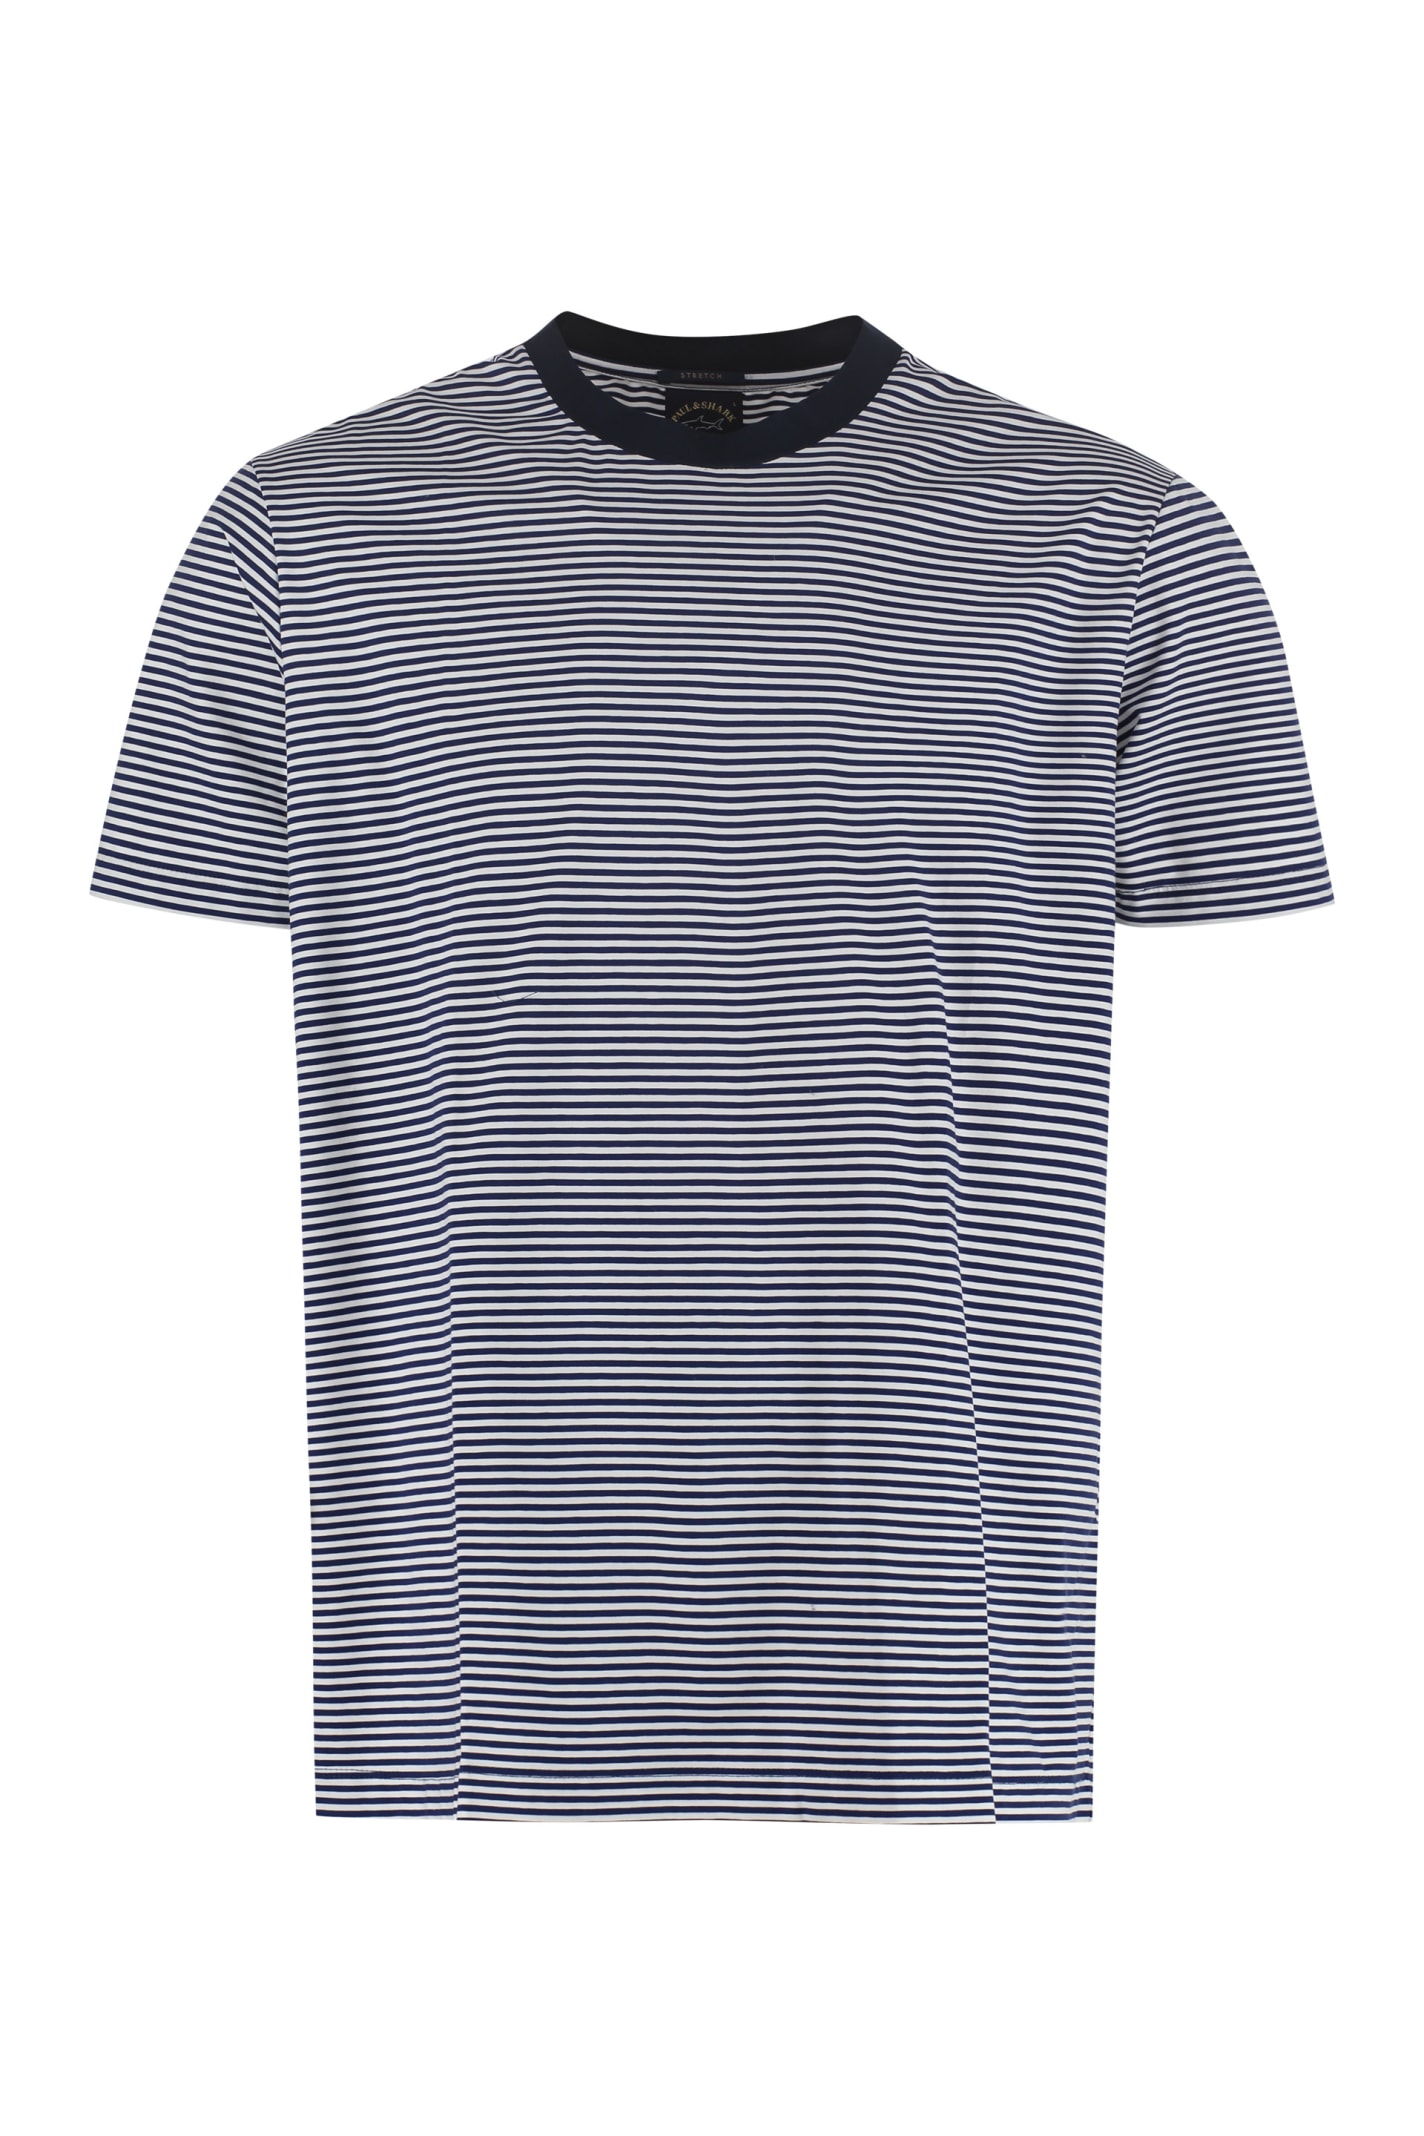 Paul & Shark Striped Cotton T-shirt